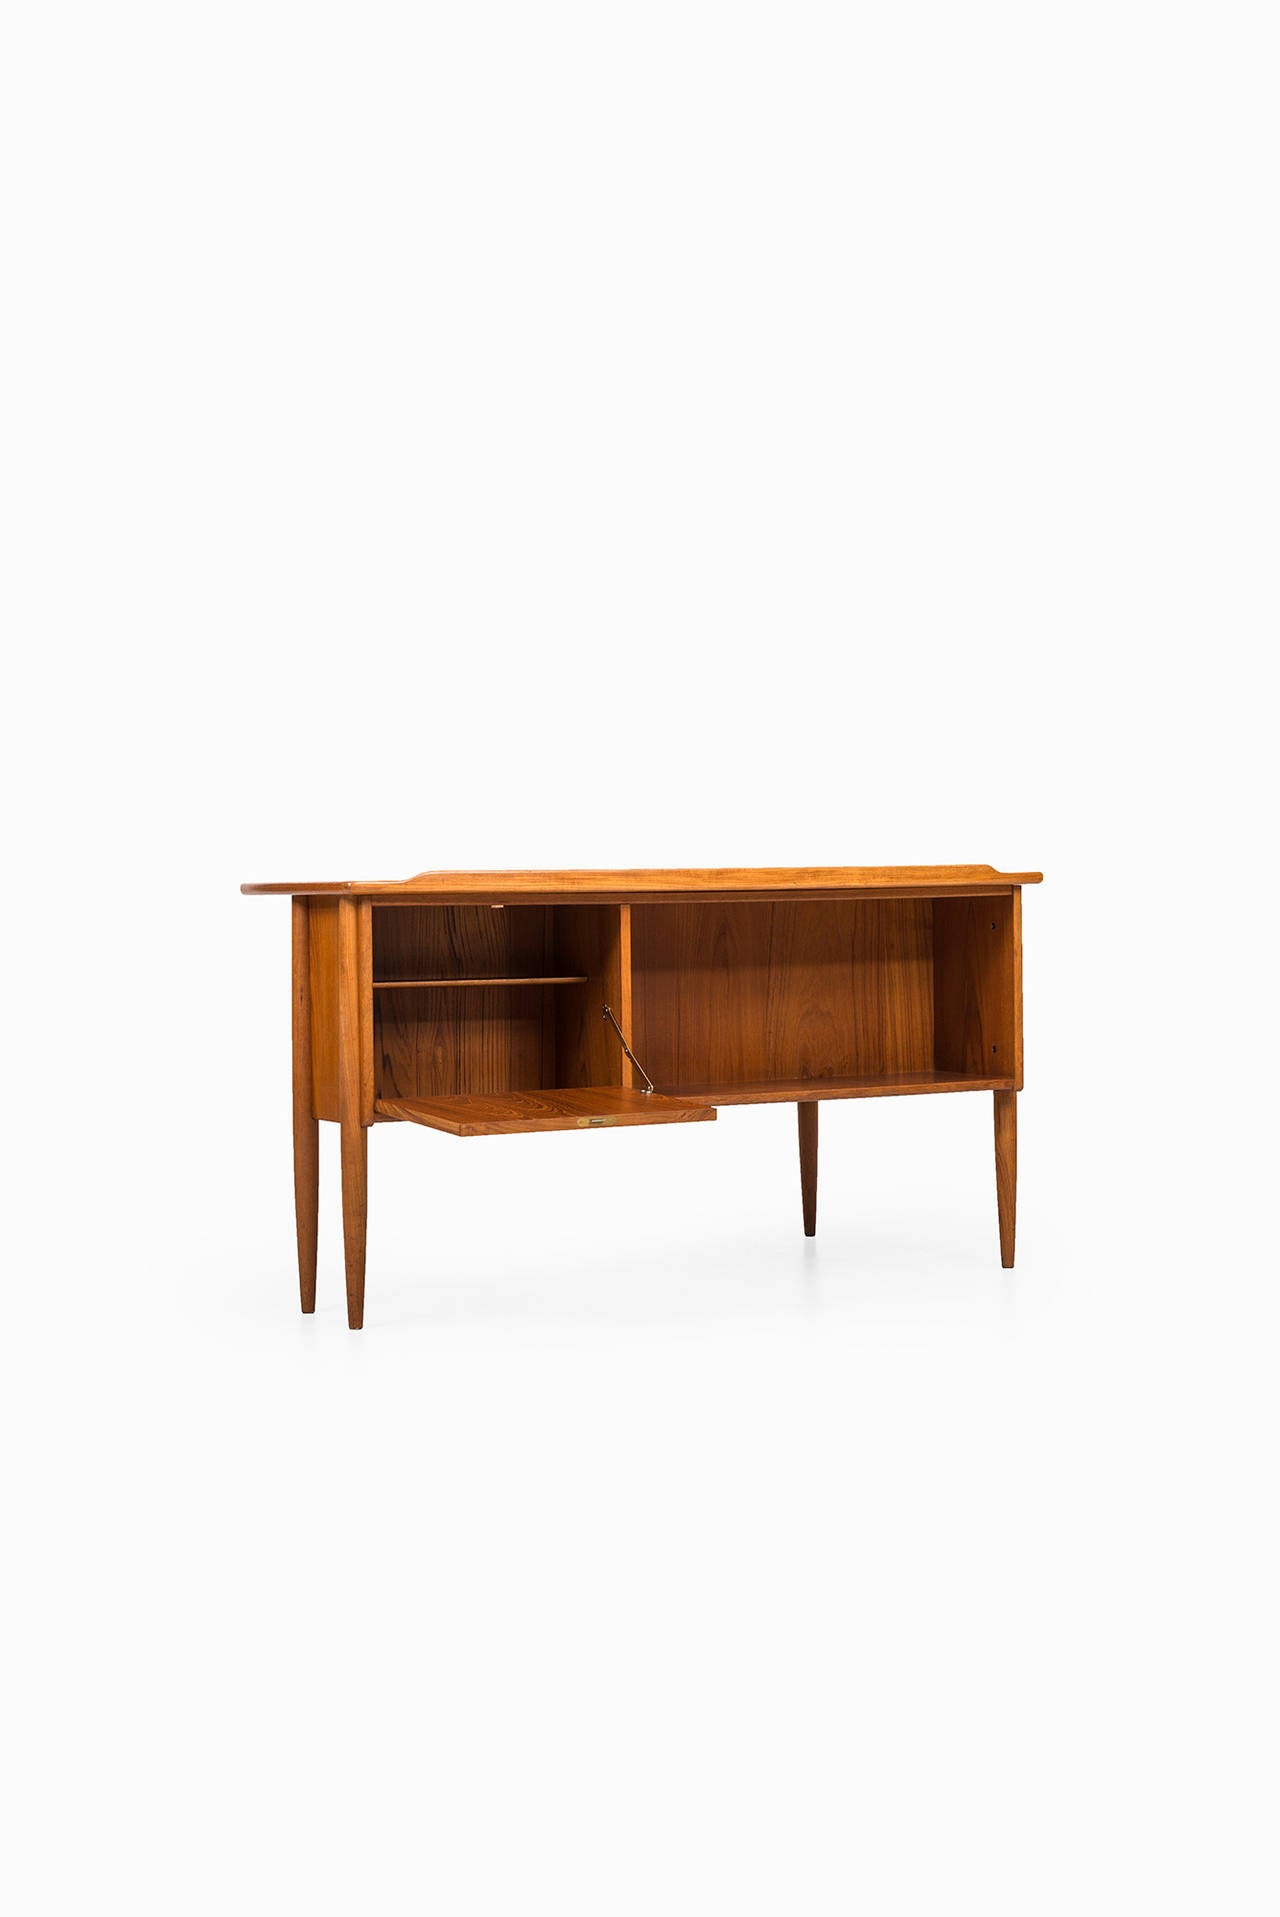 Göran Strand Desk Model A10 by Lelångs Möbelfabrik in Sweden 1